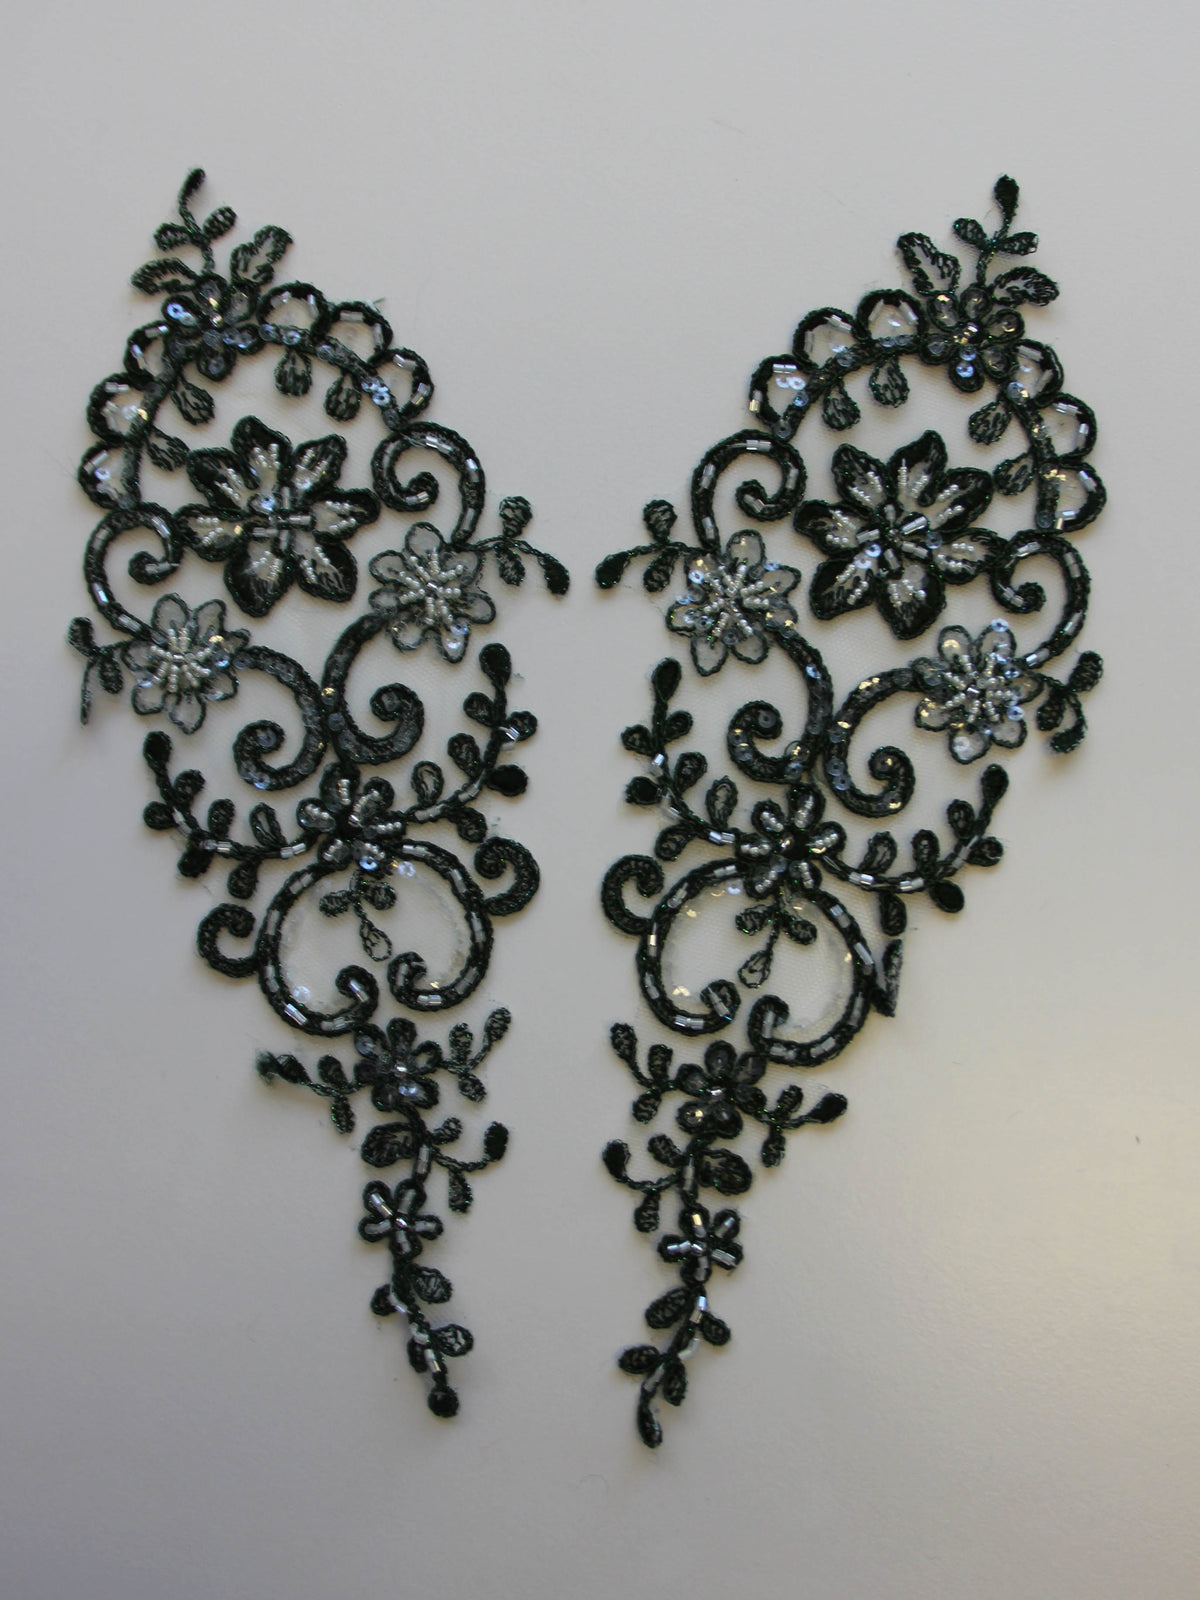 LA-033: 3D floral lace applique pair: Dusty Pink – Aleemahs